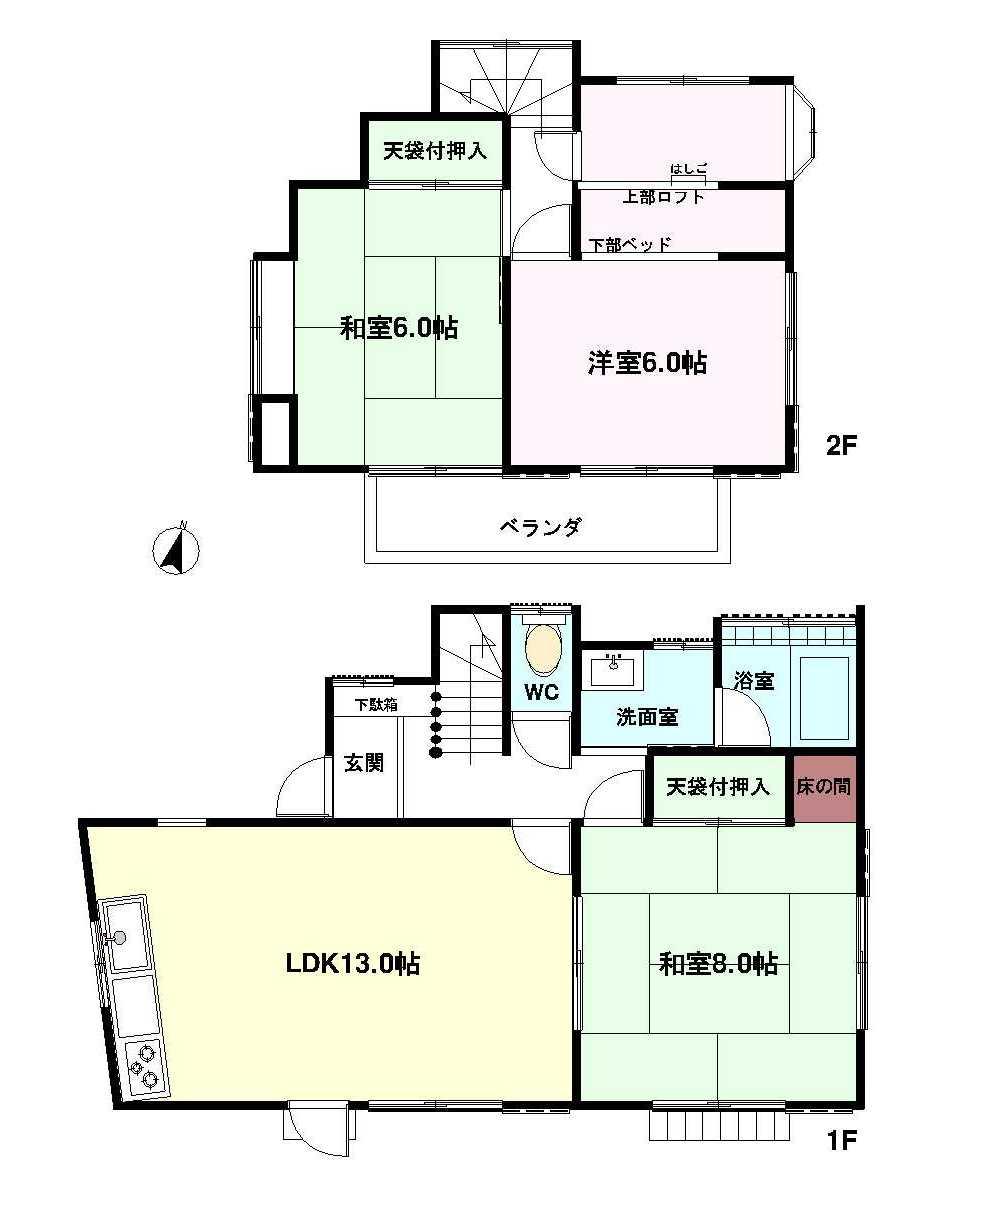 Floor plan. 9.8 million yen, 3LDK, Land area 107.12 sq m , Building area 72.86 sq m